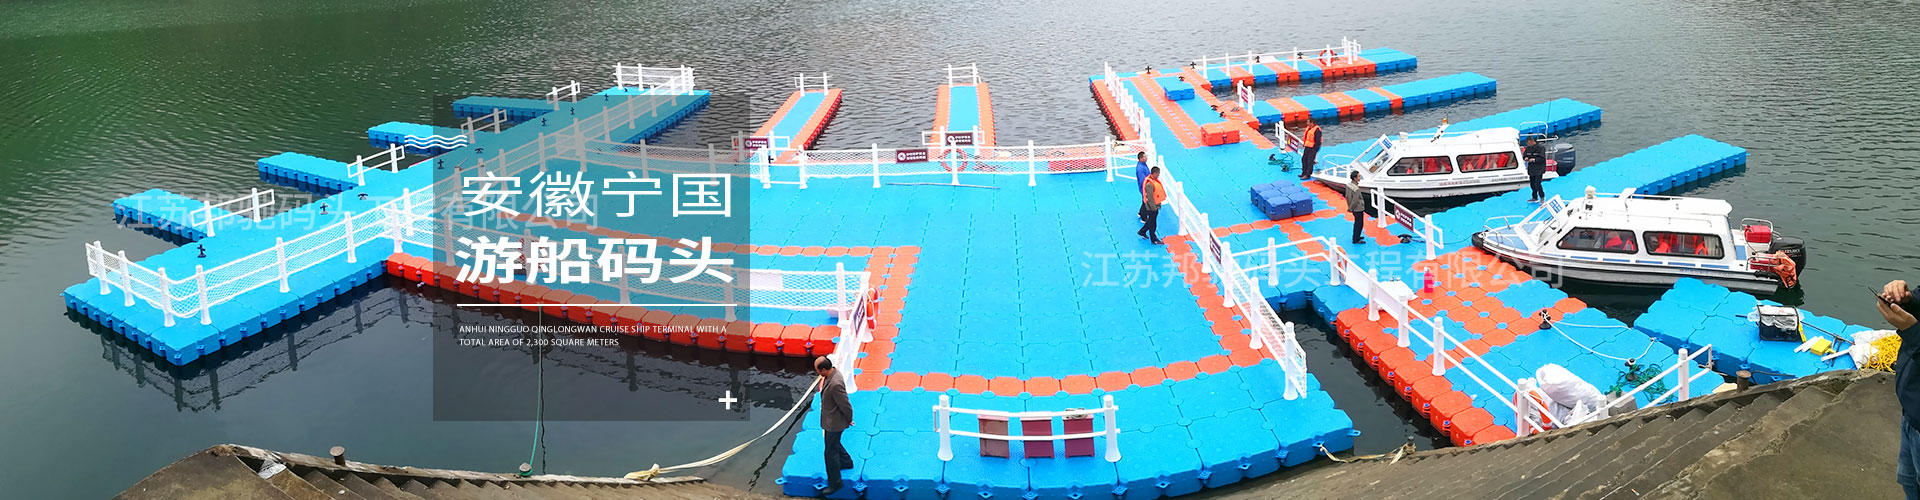 江苏邦驰码头工程有限公司客户案例-安徽宁国游船码头